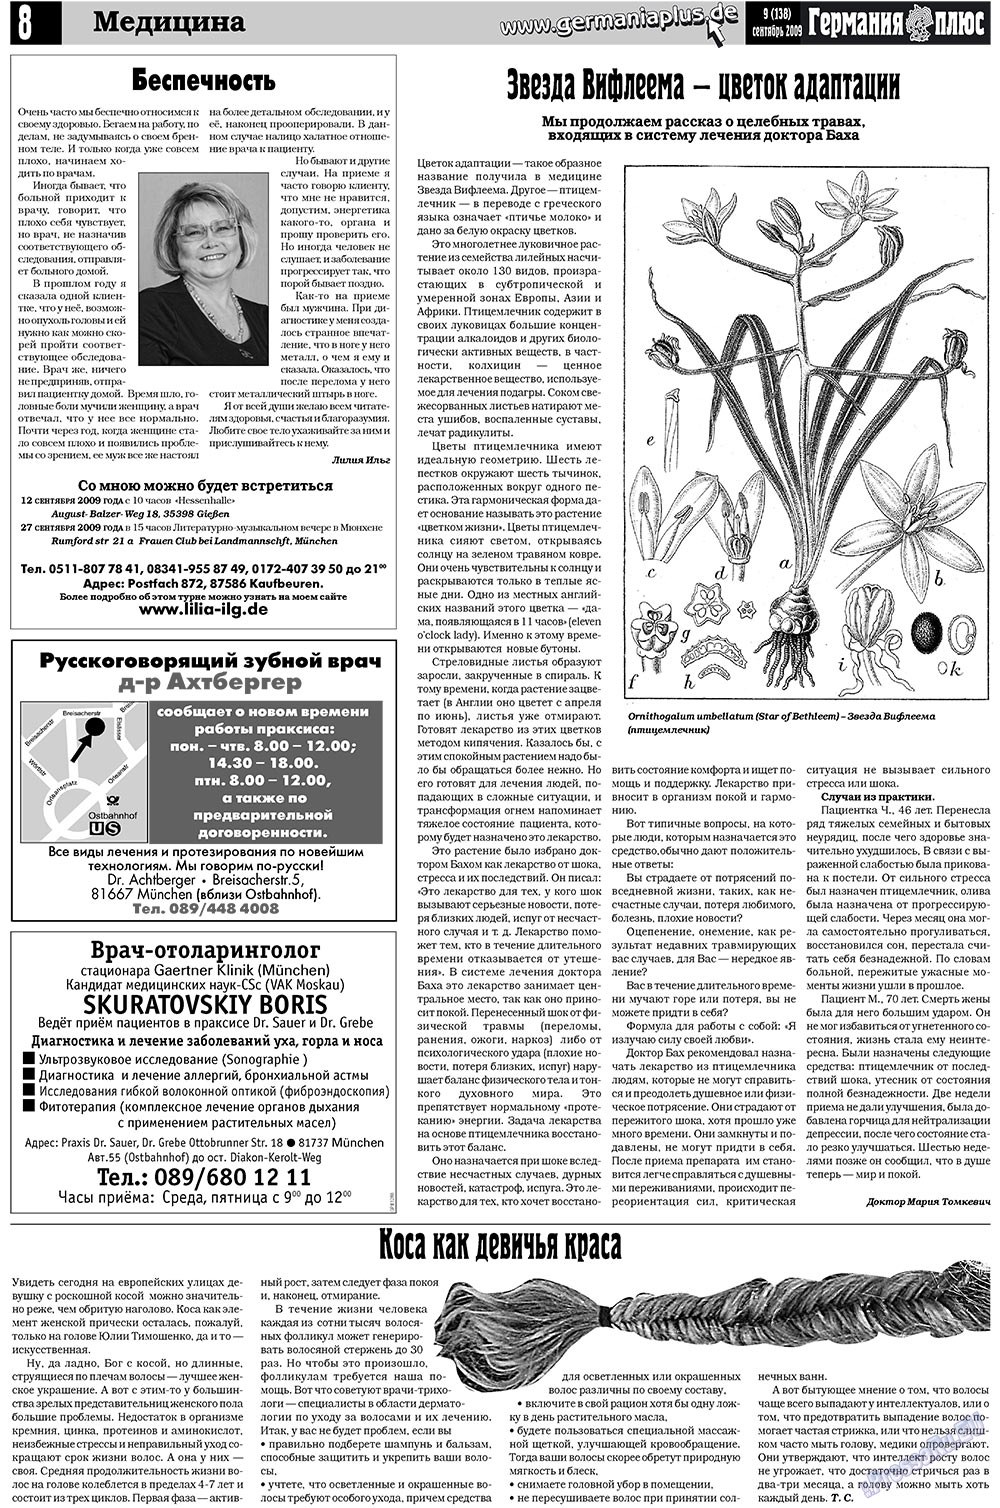 Германия плюс, газета. 2009 №9 стр.12